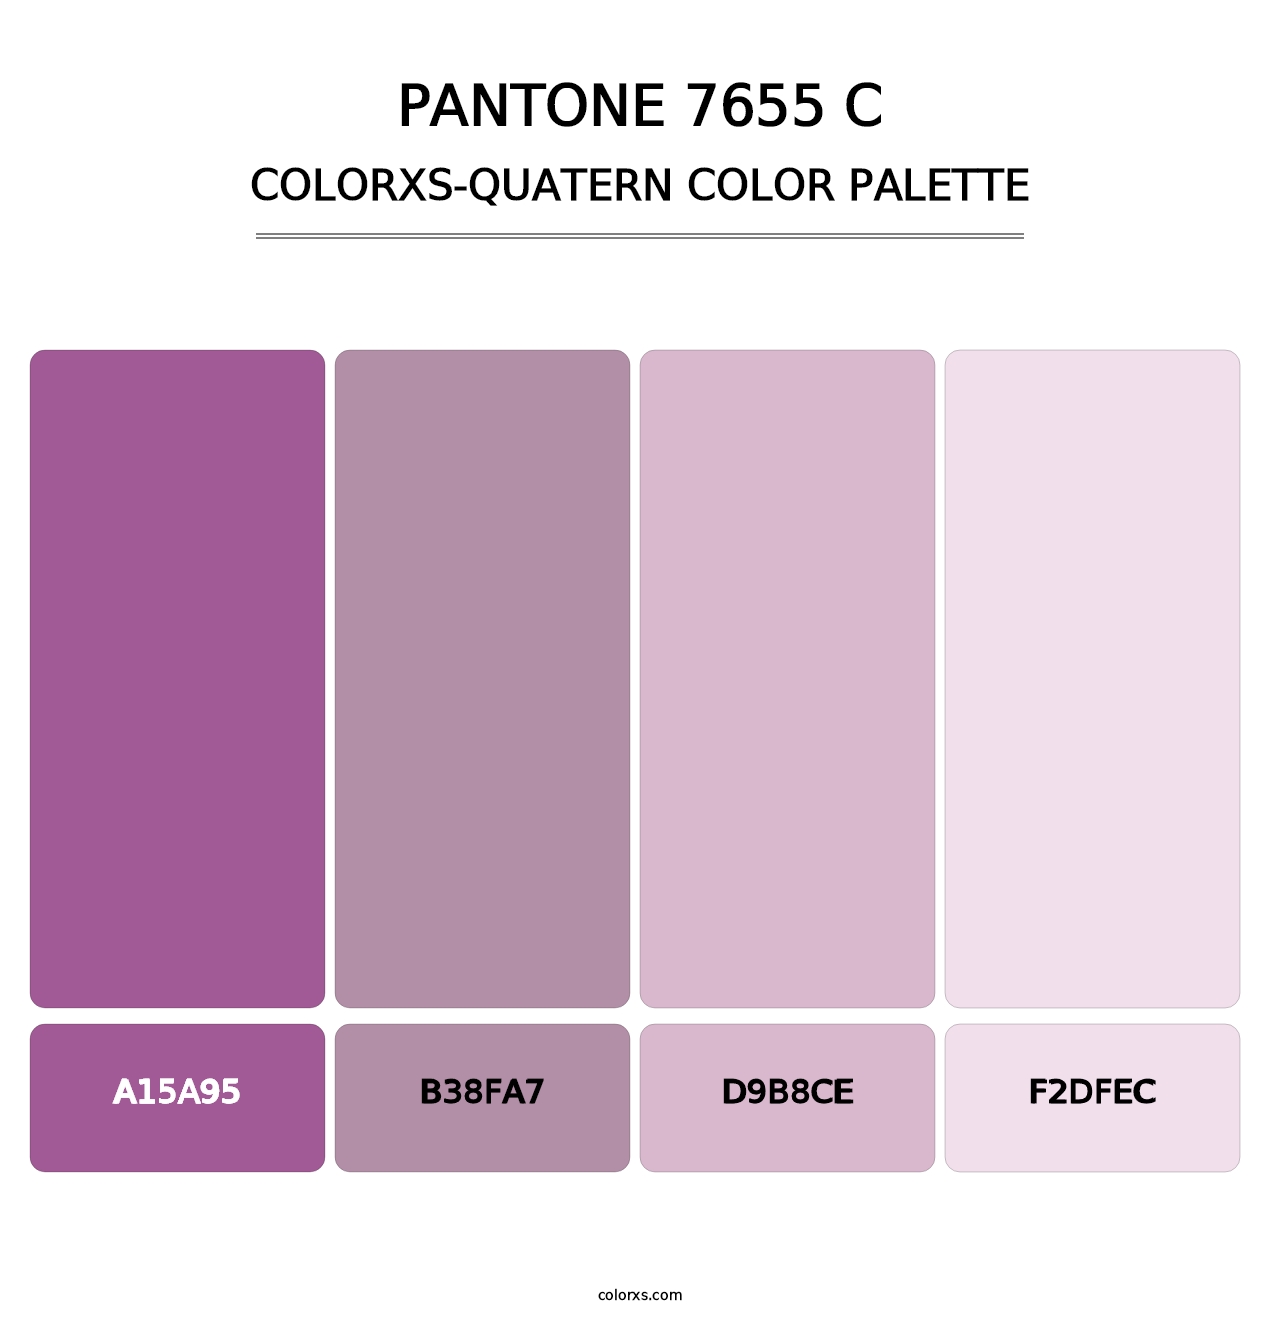 PANTONE 7655 C - Colorxs Quatern Palette